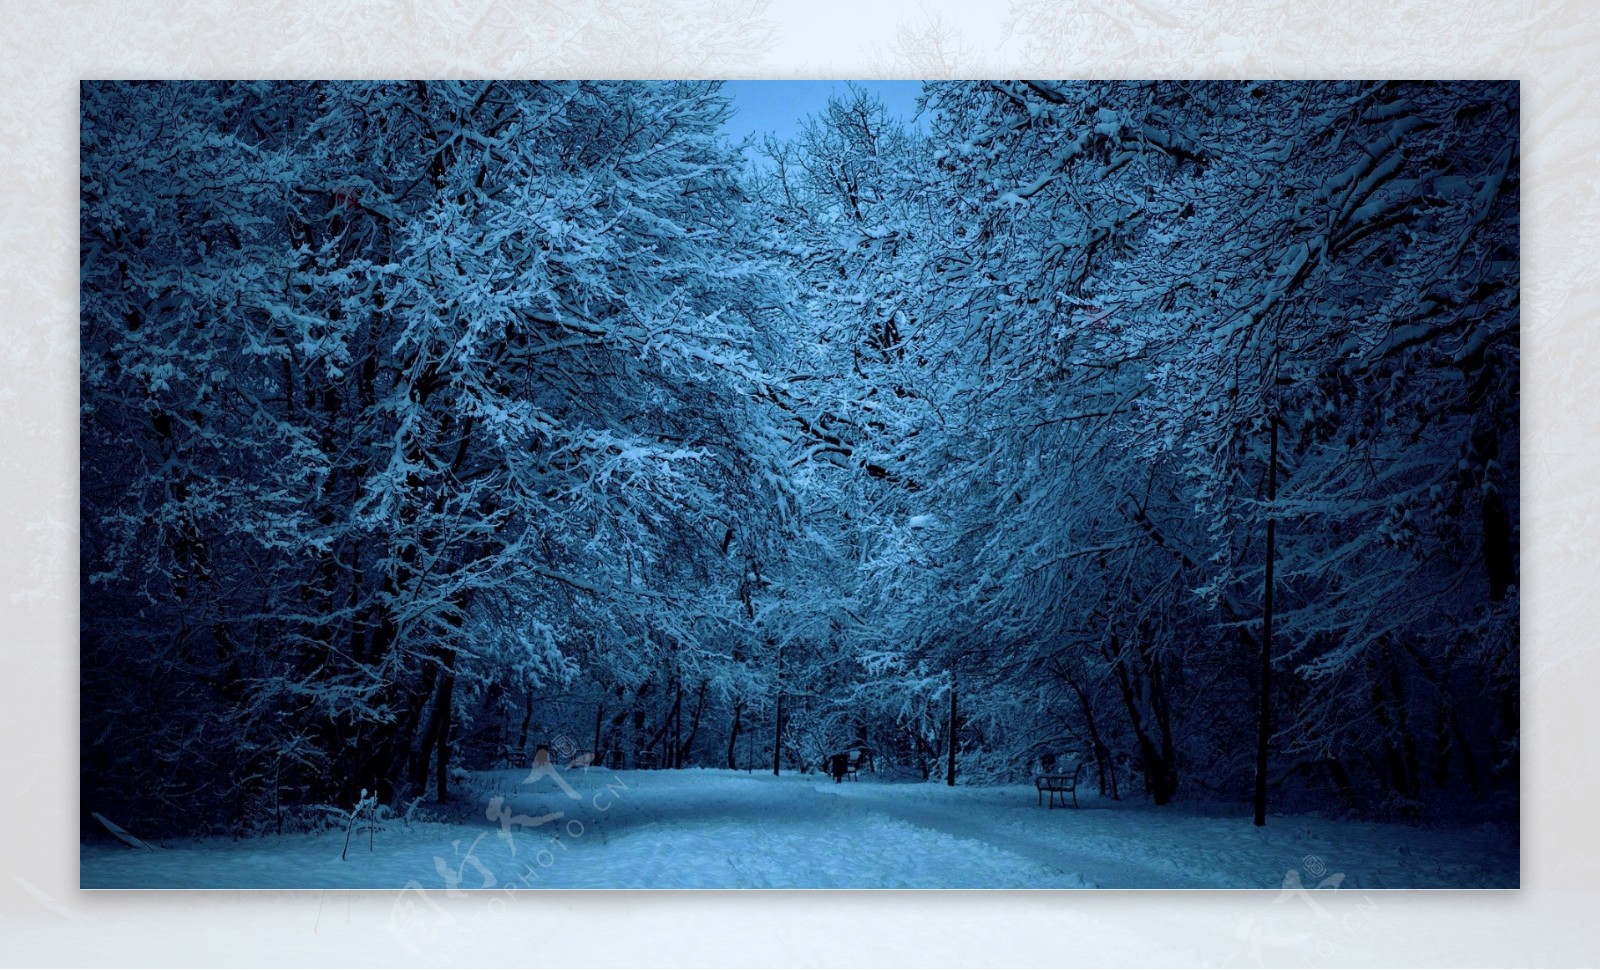 雪后的林间道路